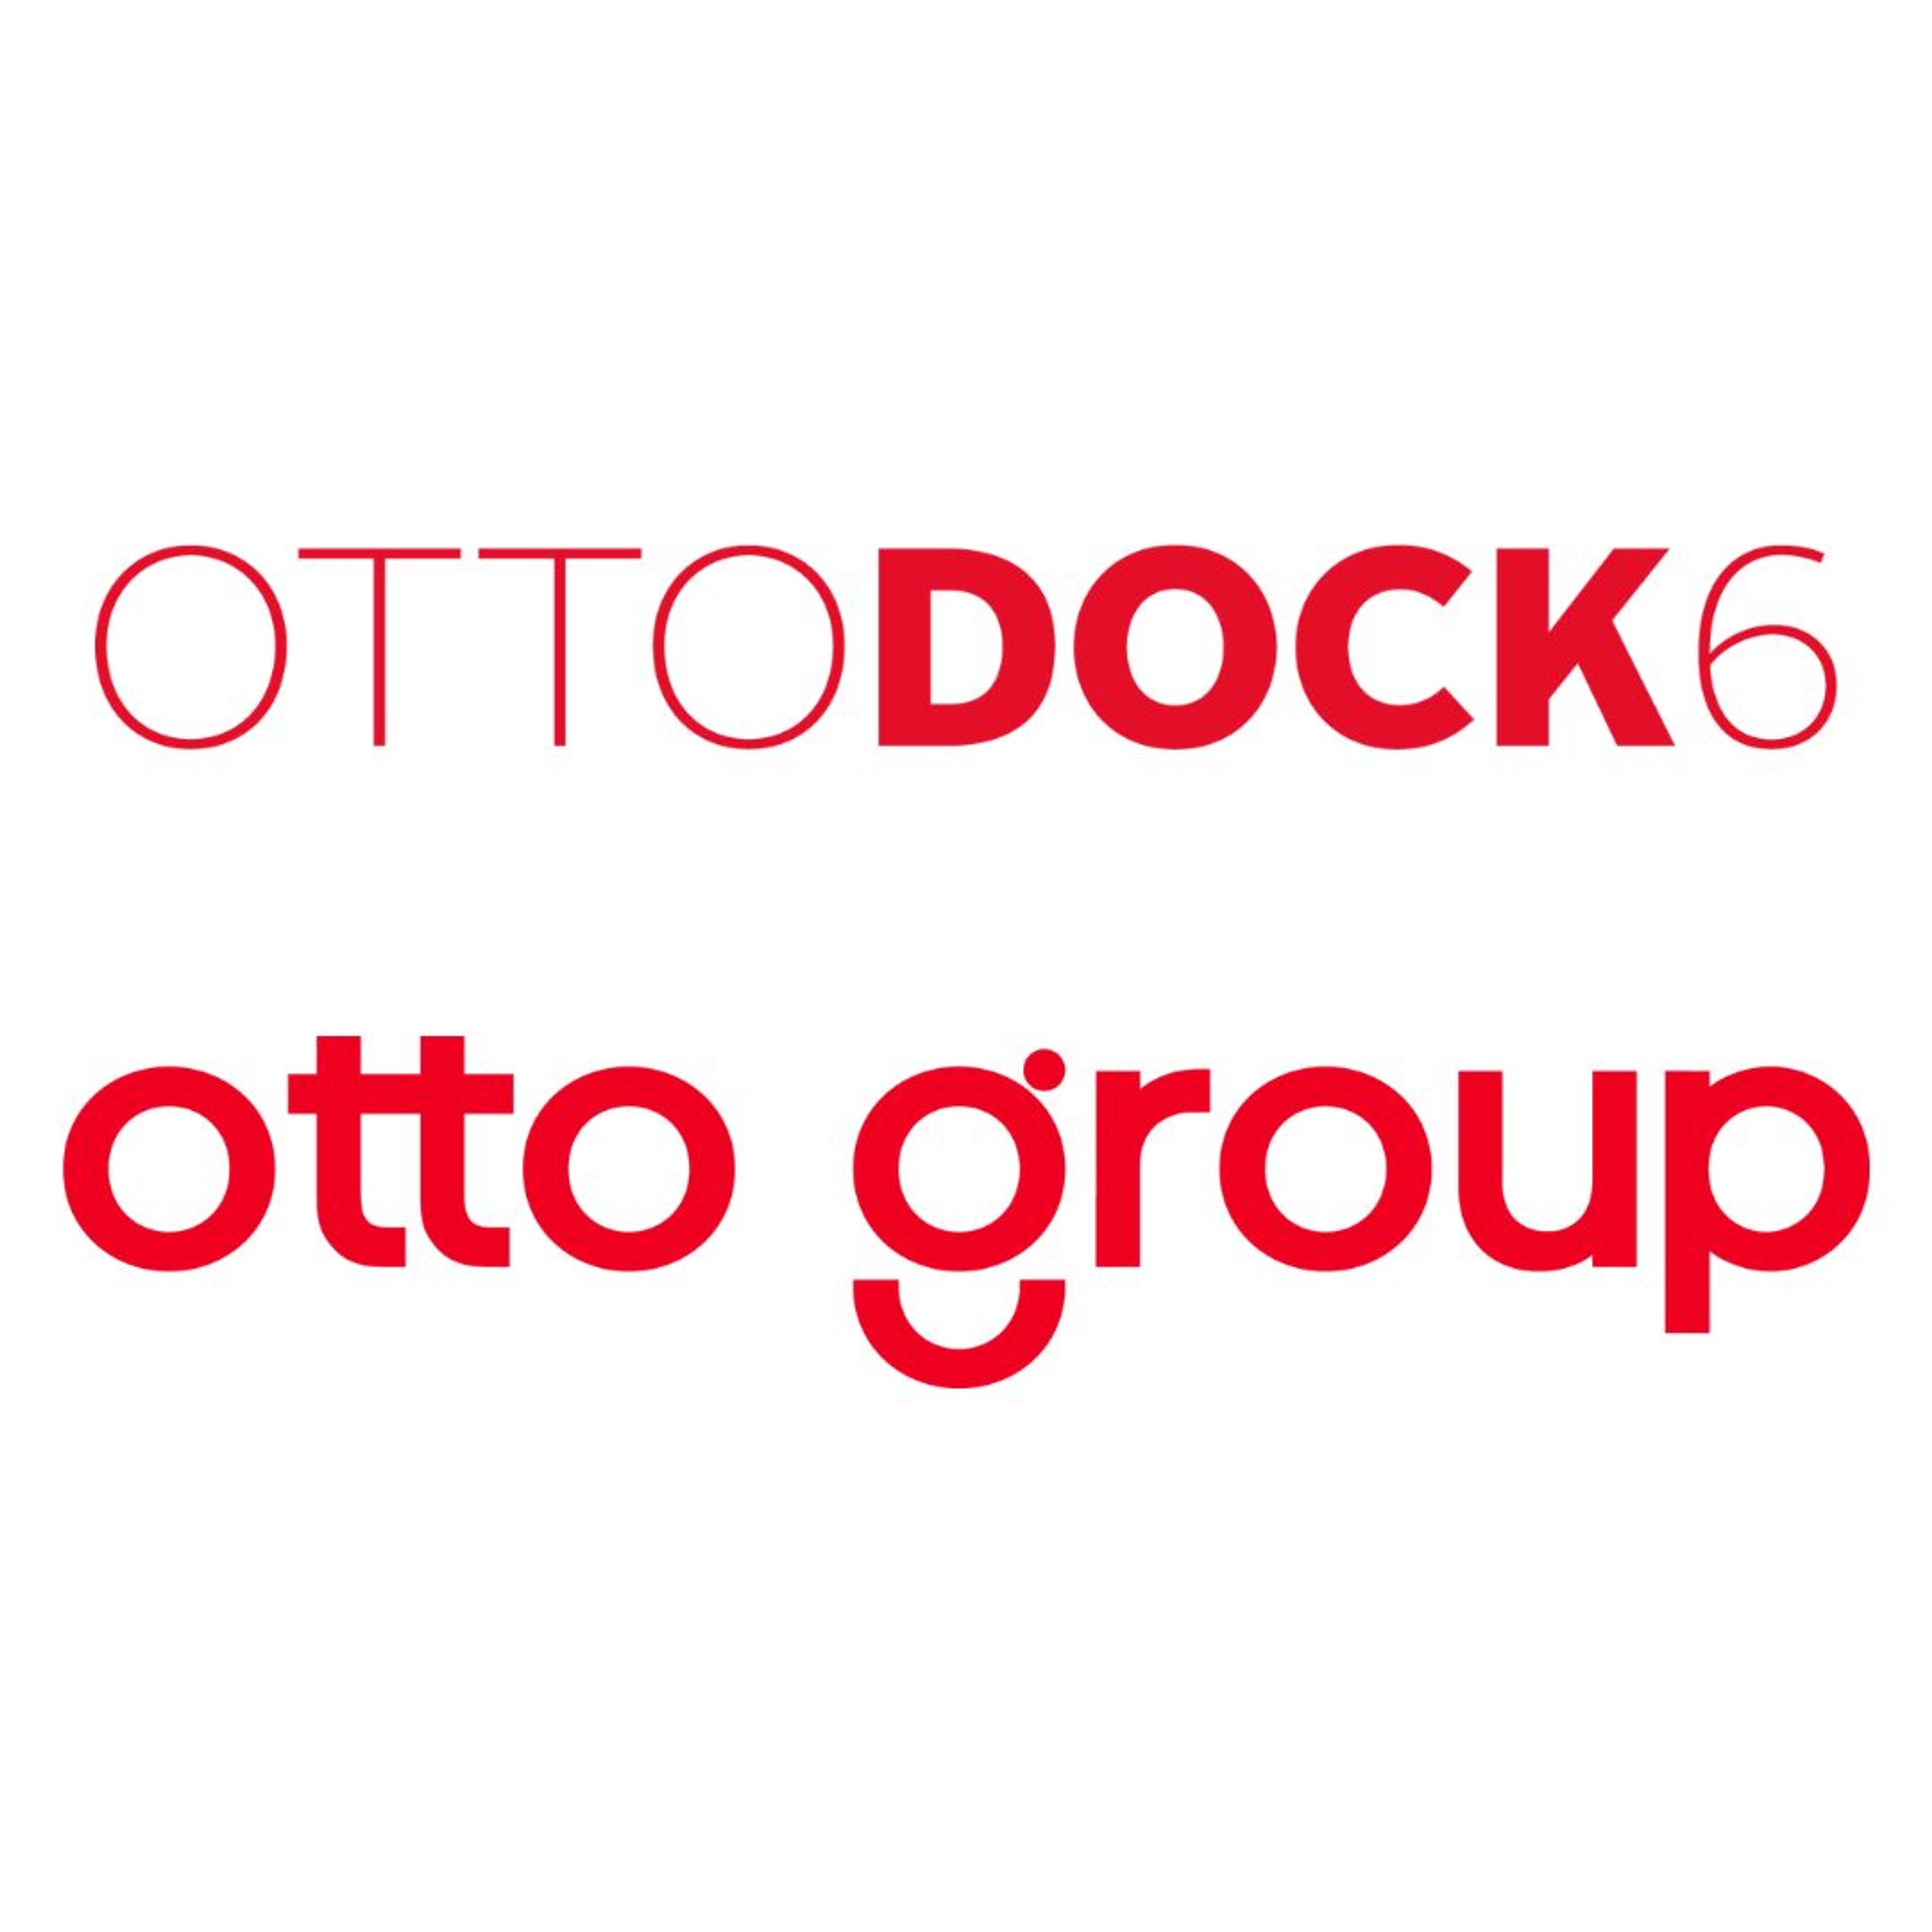 OTTO DOCK 6 und GROUP LOGO